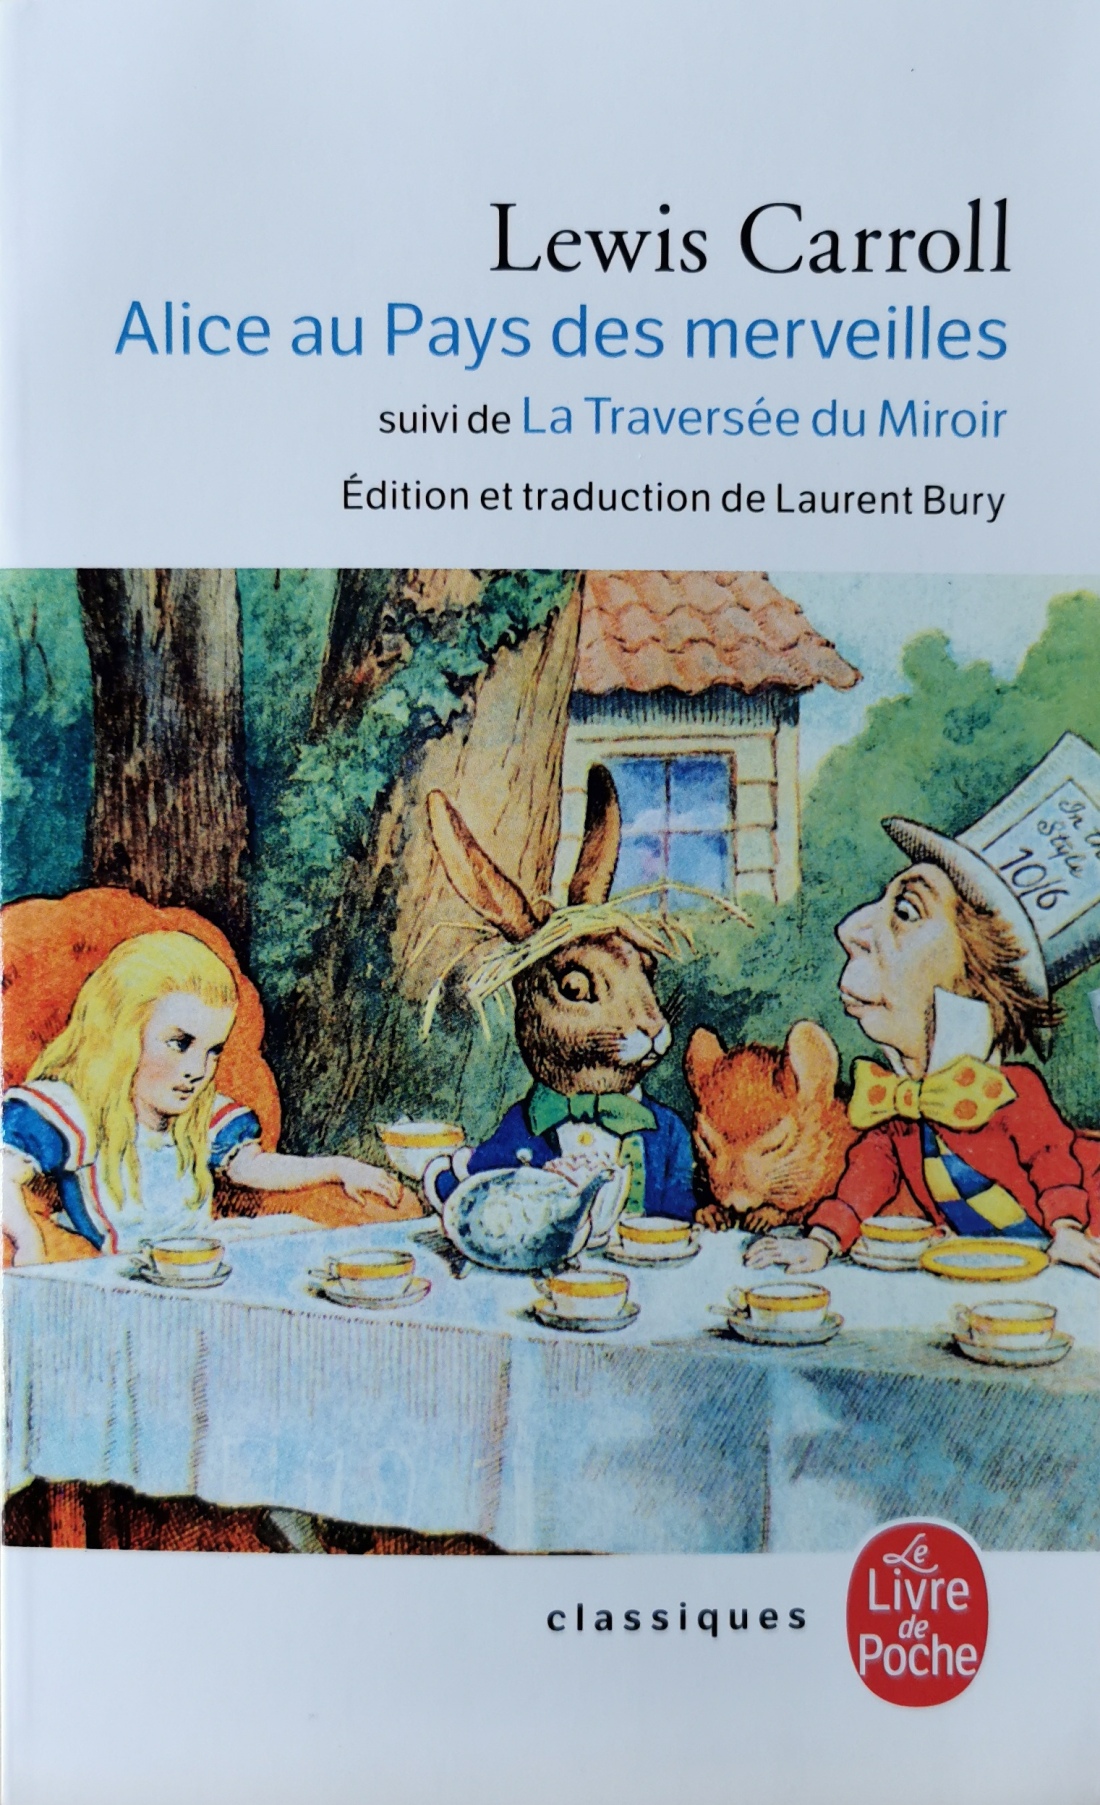 Lewis Carroll, Alice au Pays des merveilles